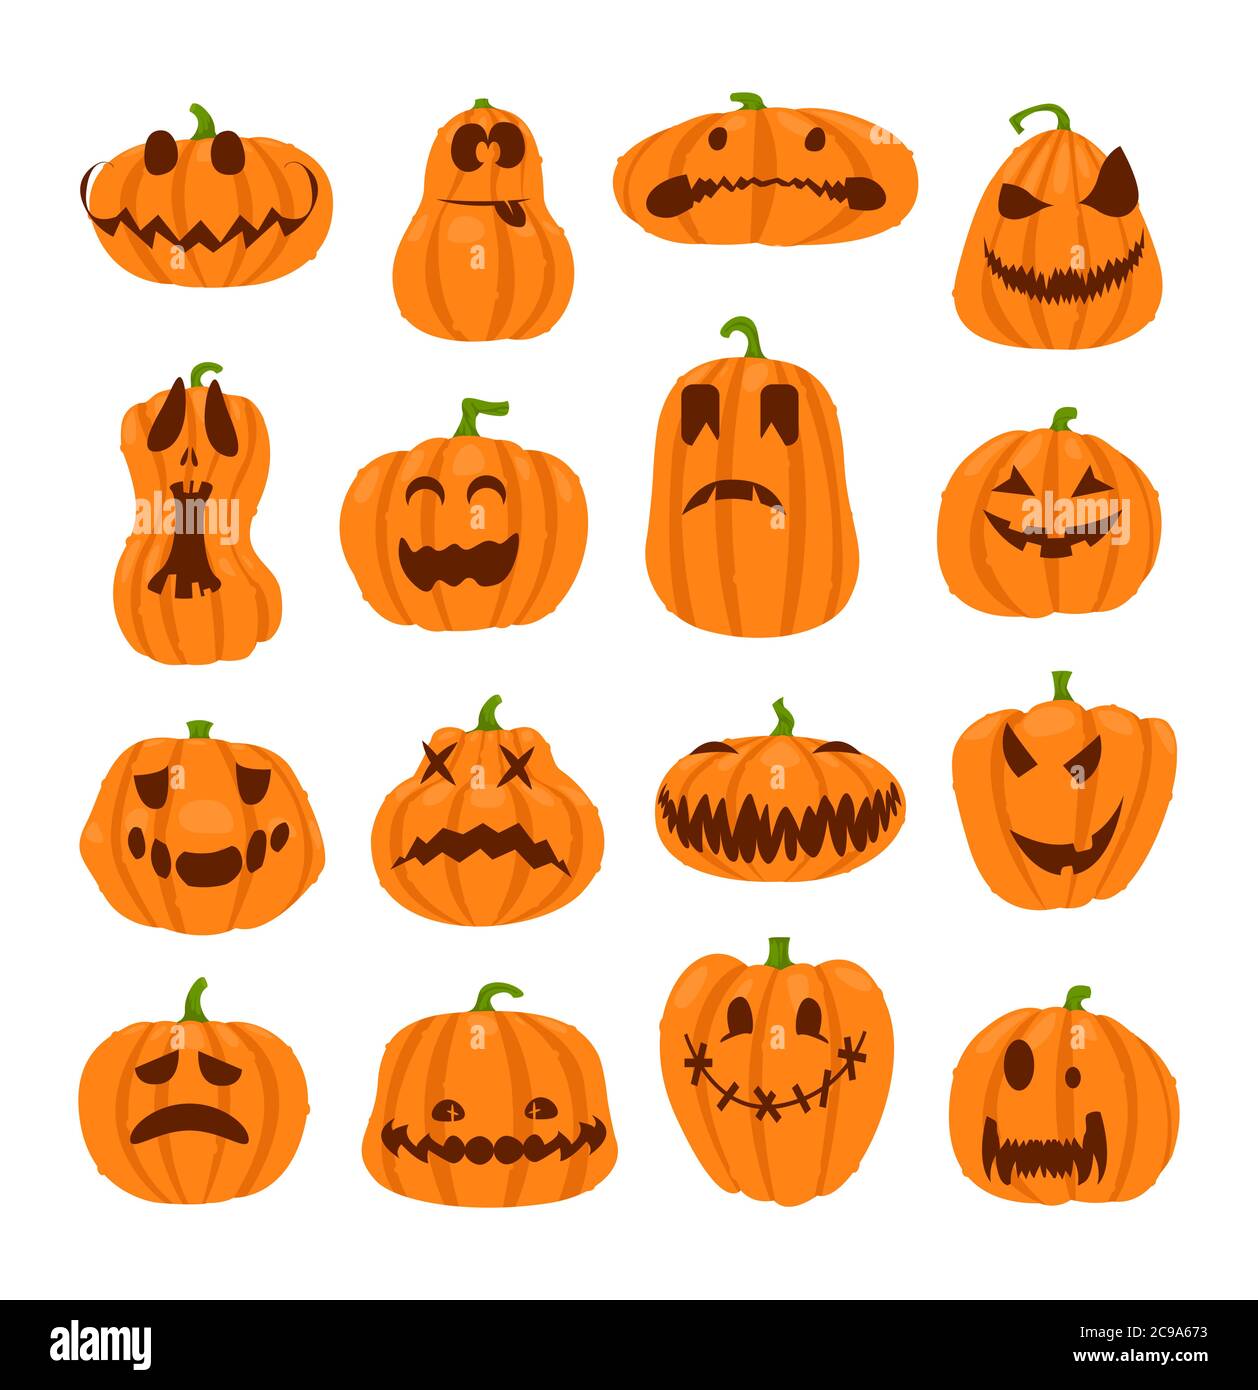 Set di facce di zucche halloween. Il simbolo principale della felice vacanza di Halloween. Zucca arancione con sorriso per il tuo design per la vacanza Halloween. Illustrazione Vettoriale